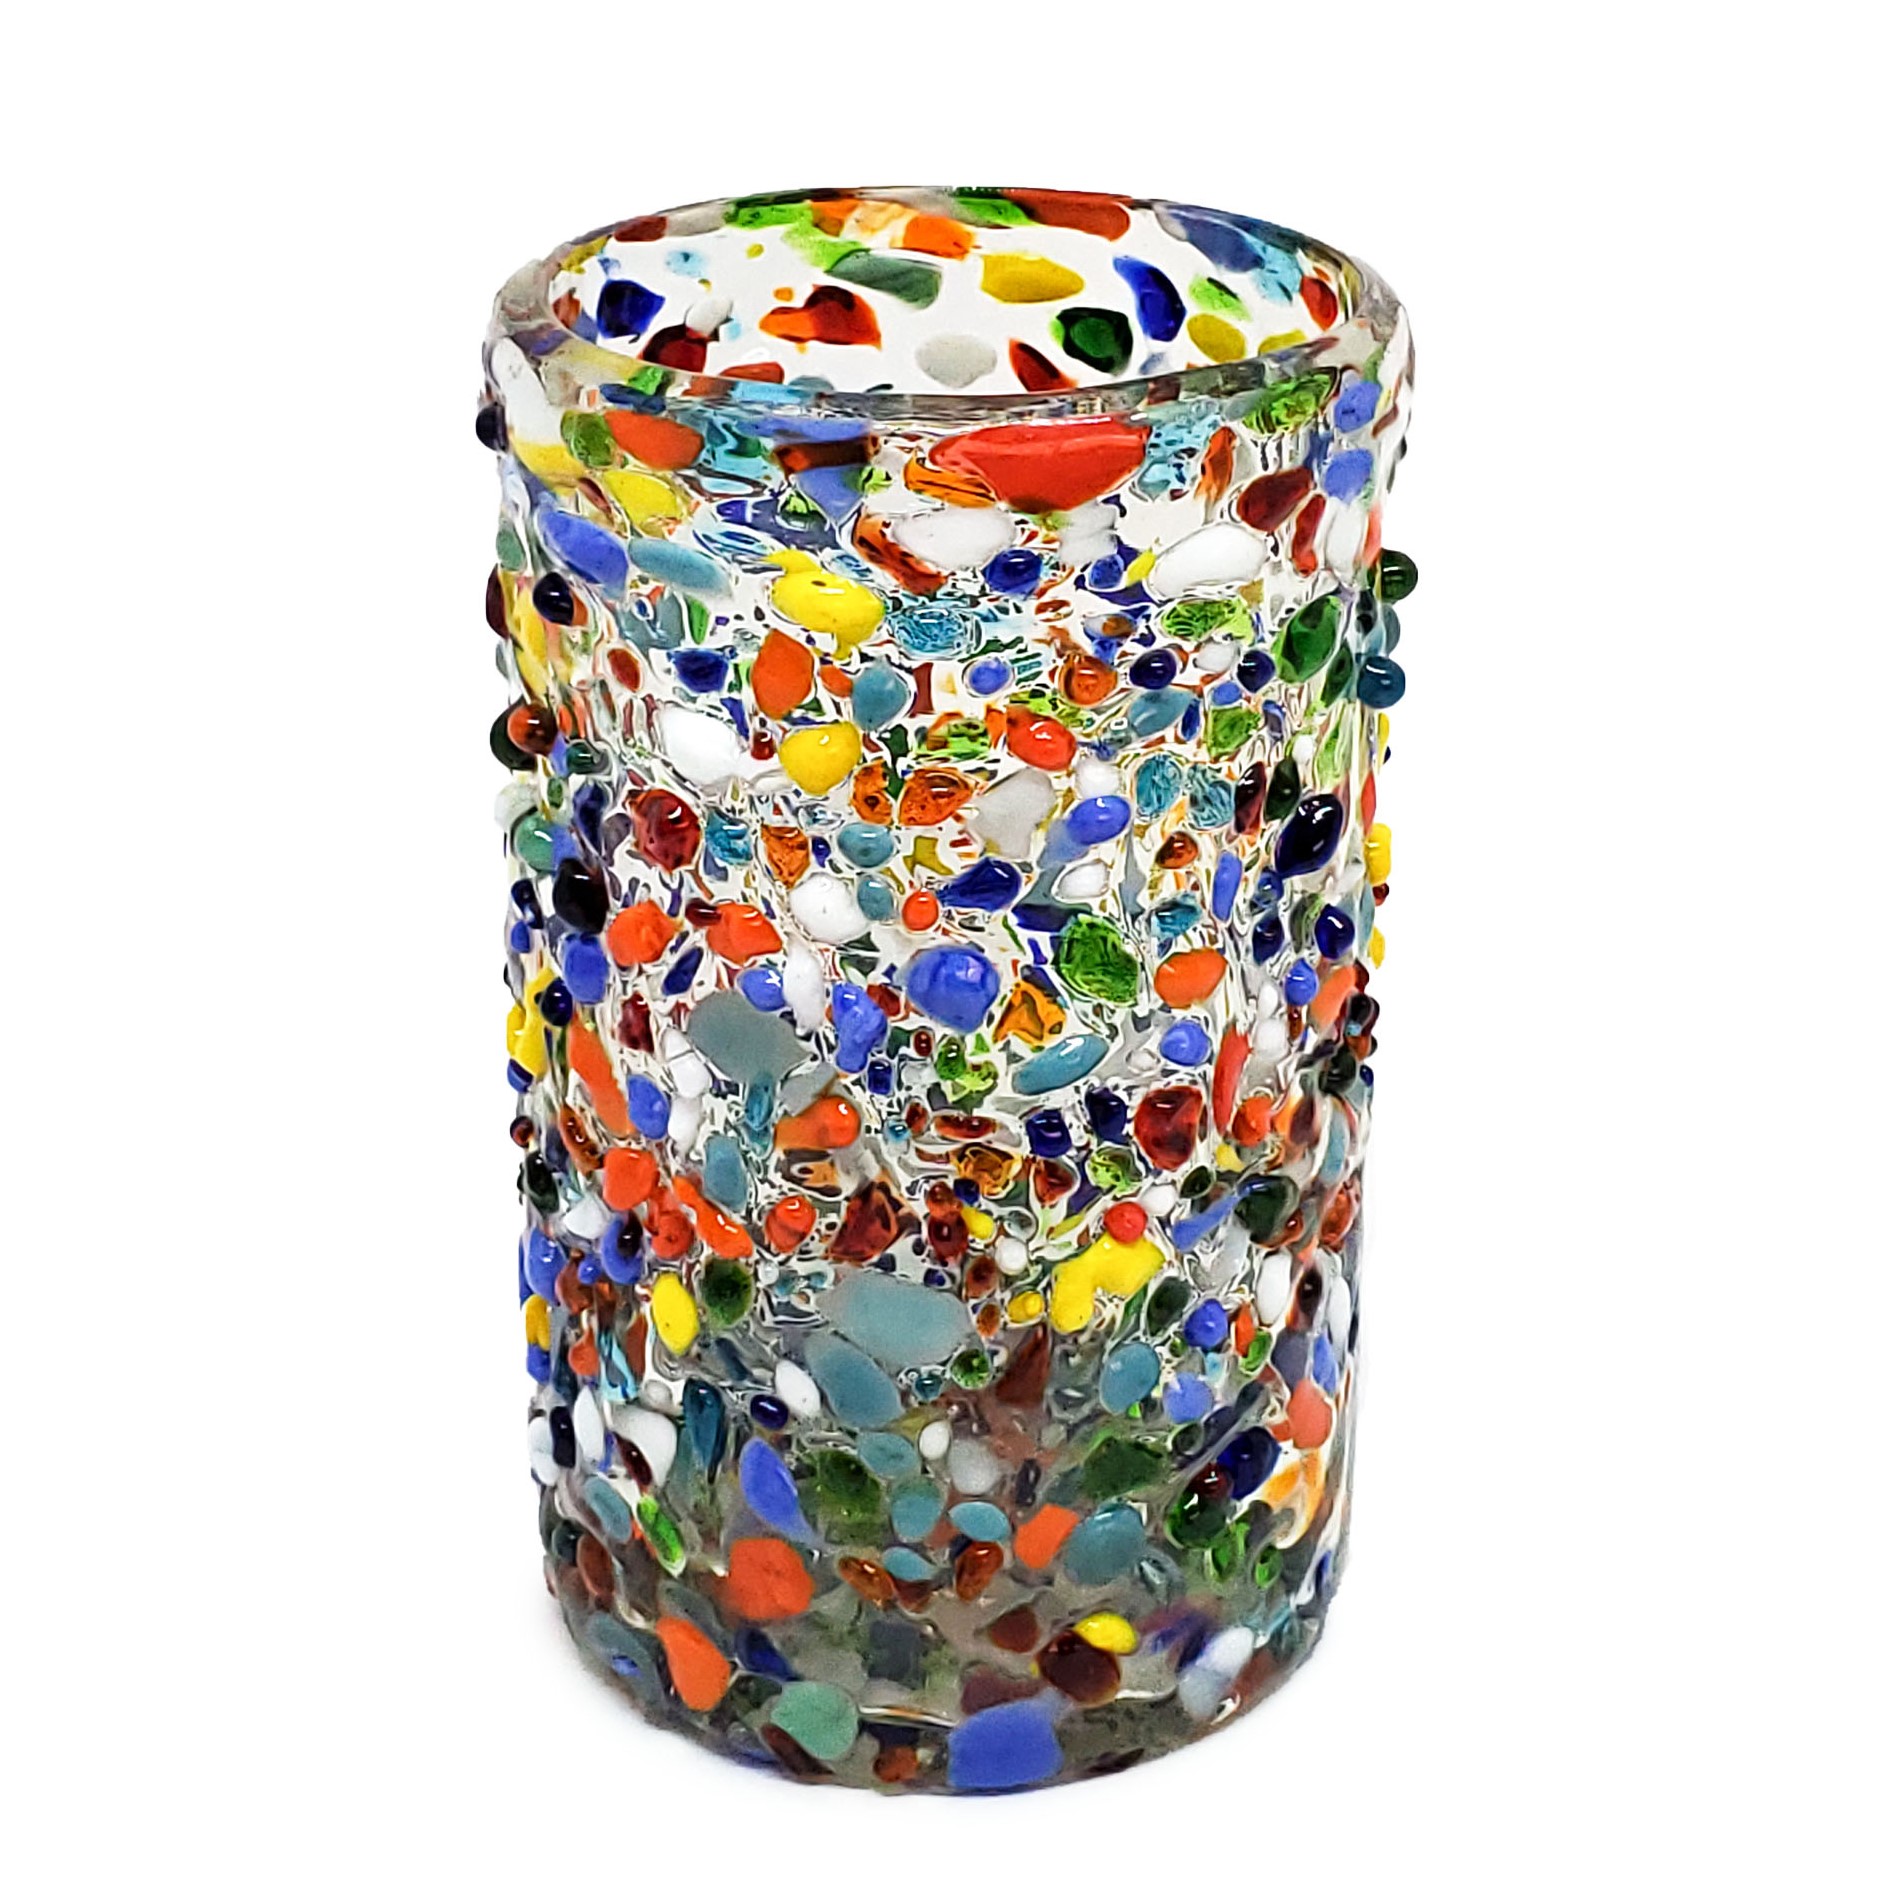 VIDRIO SOPLADO / Juego de 6 vasos grandes 'Confeti granizado', 14 oz, Vidrio Reciclado, Libre de Plomo y Toxinas